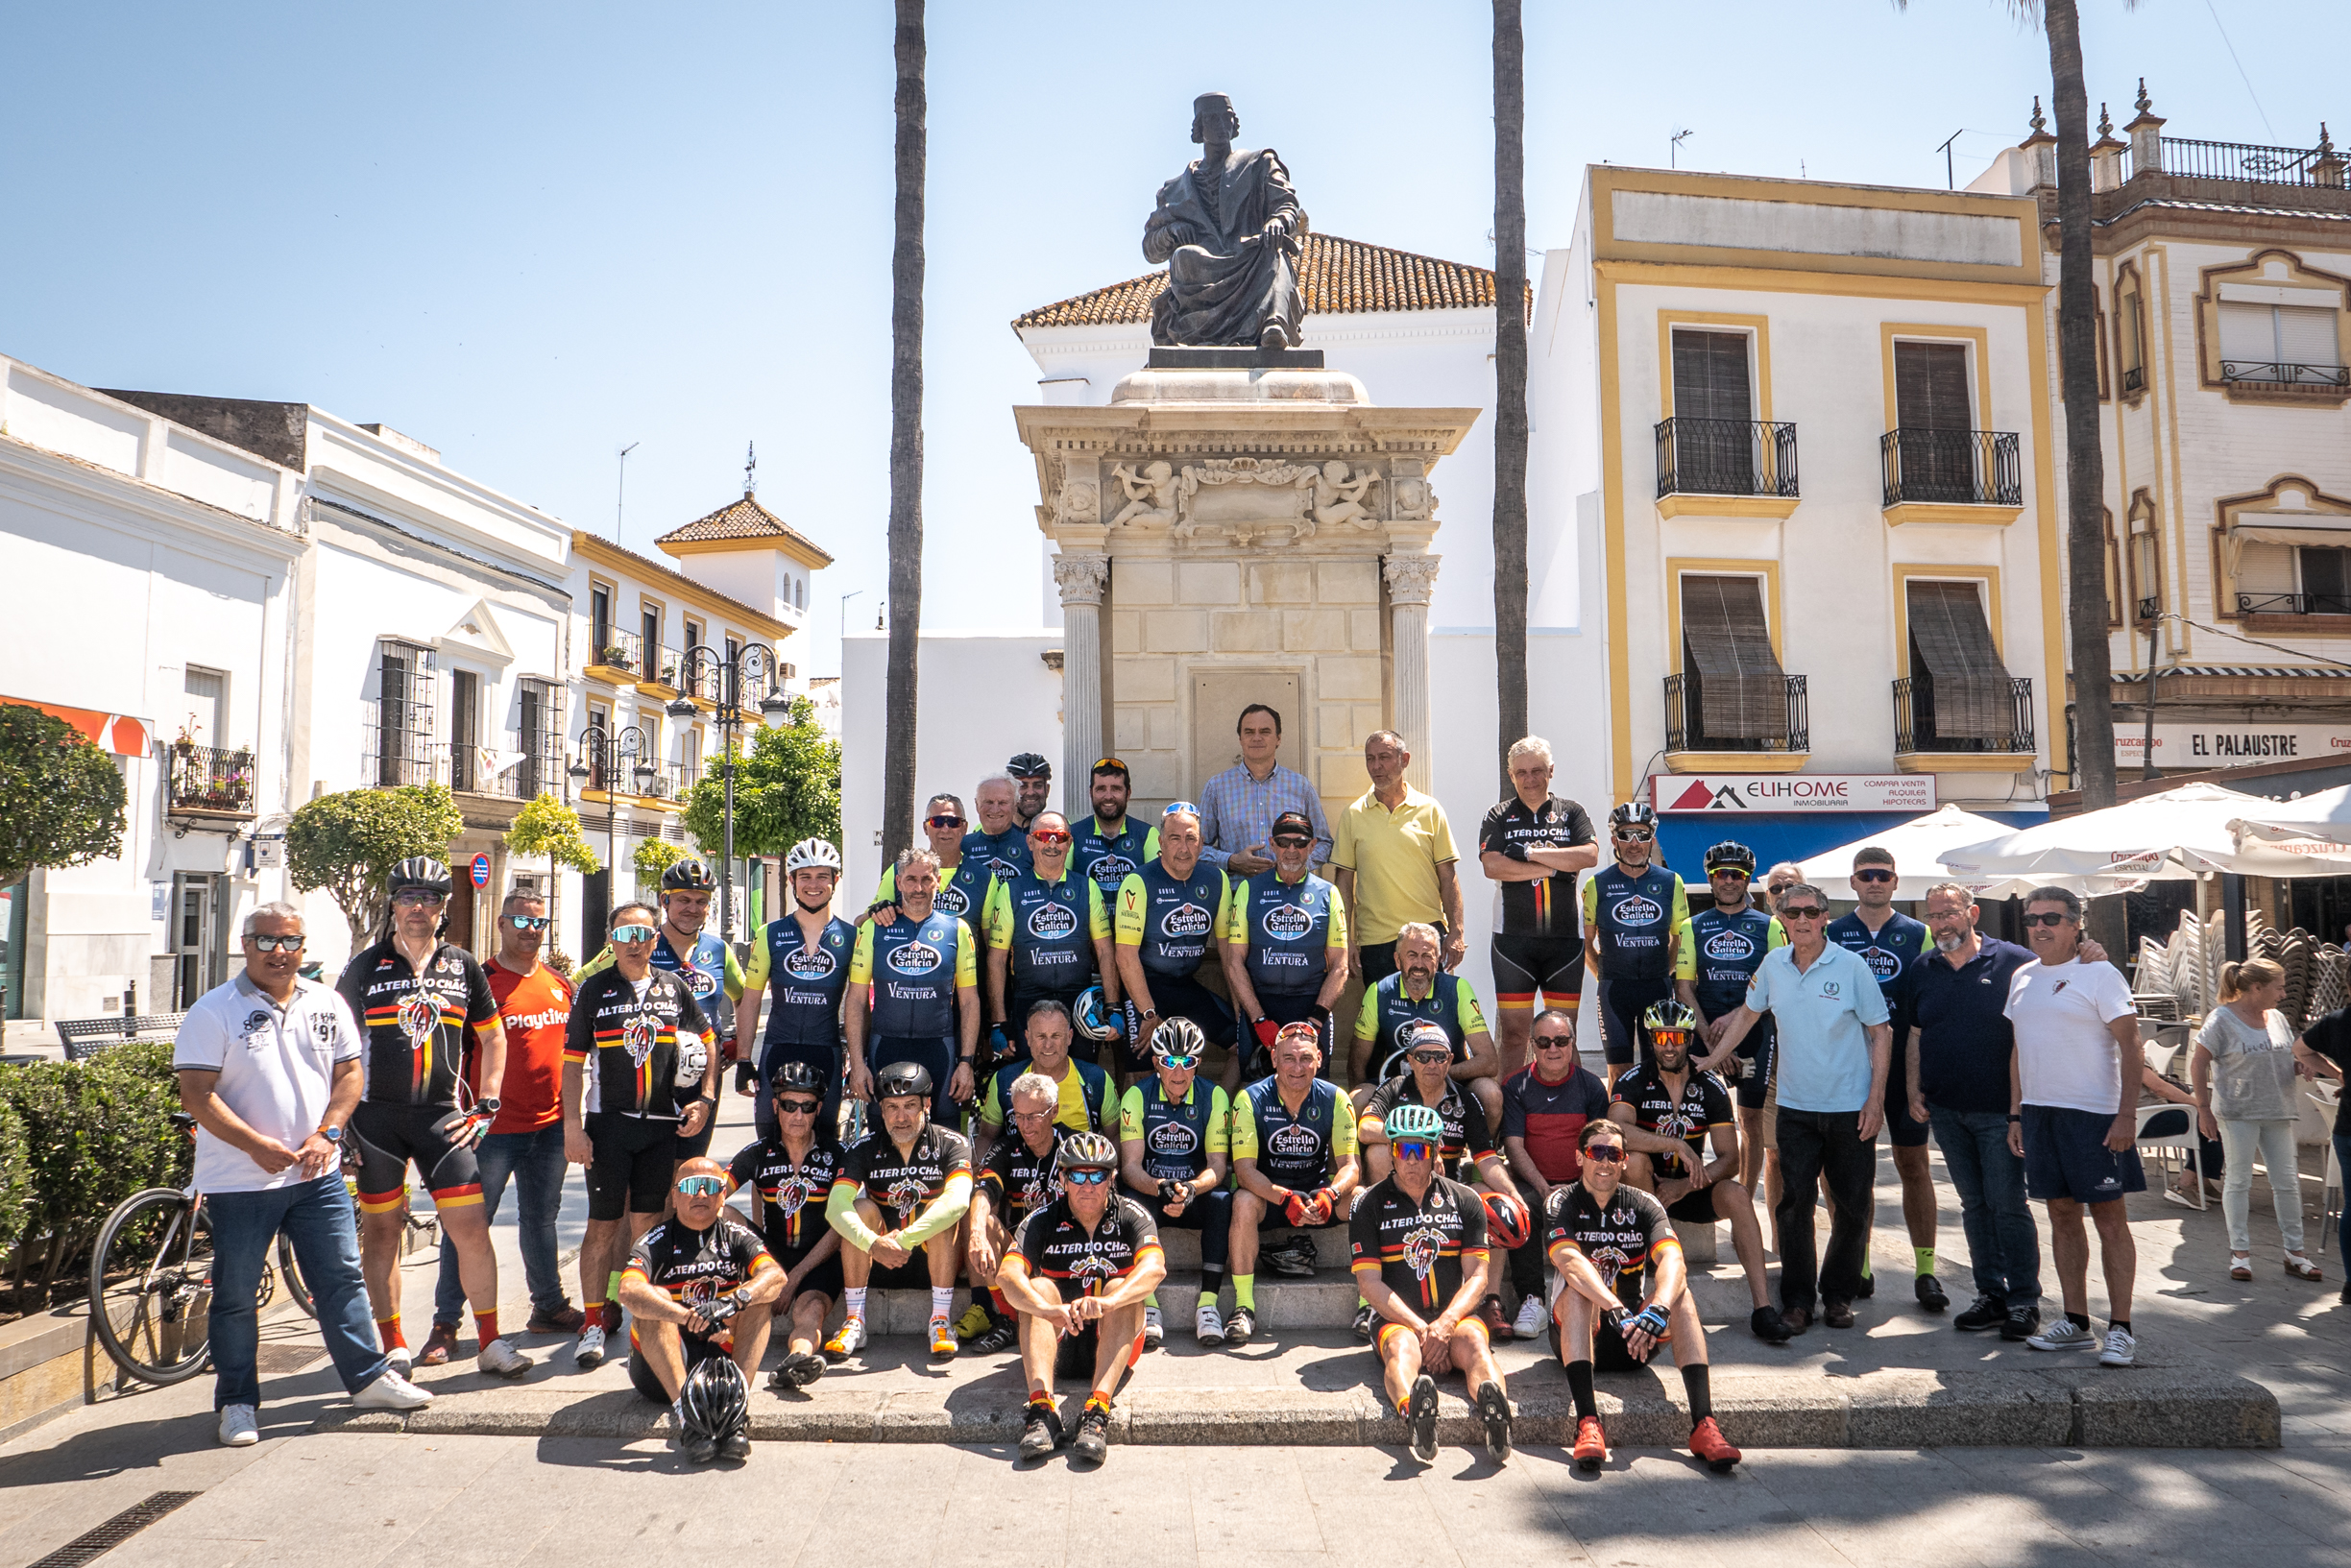 Concluye con éxito la ruta nebrisense en bici organizada con motivo del Año Cultural Nebrija